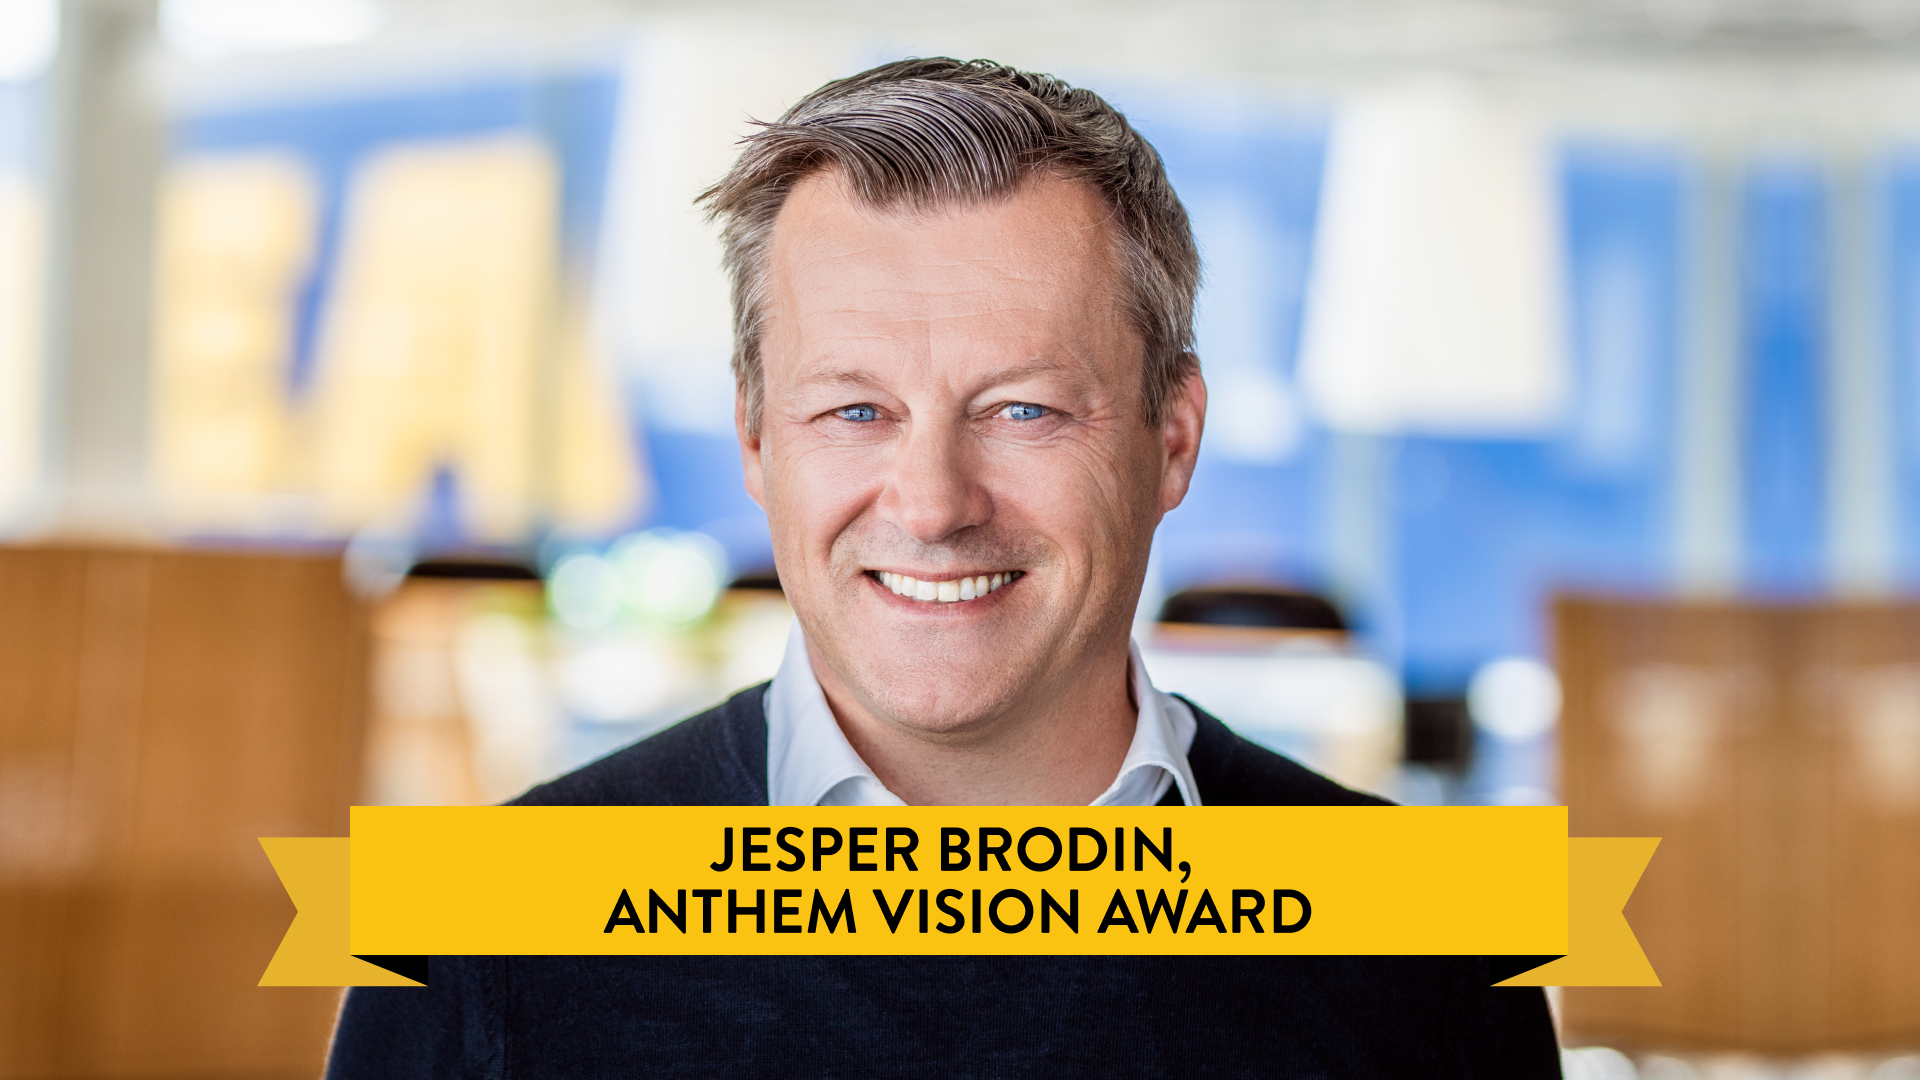 image: jesper brodin, ikea ceo headshot. text reads: jesper brodin, anthem vision award